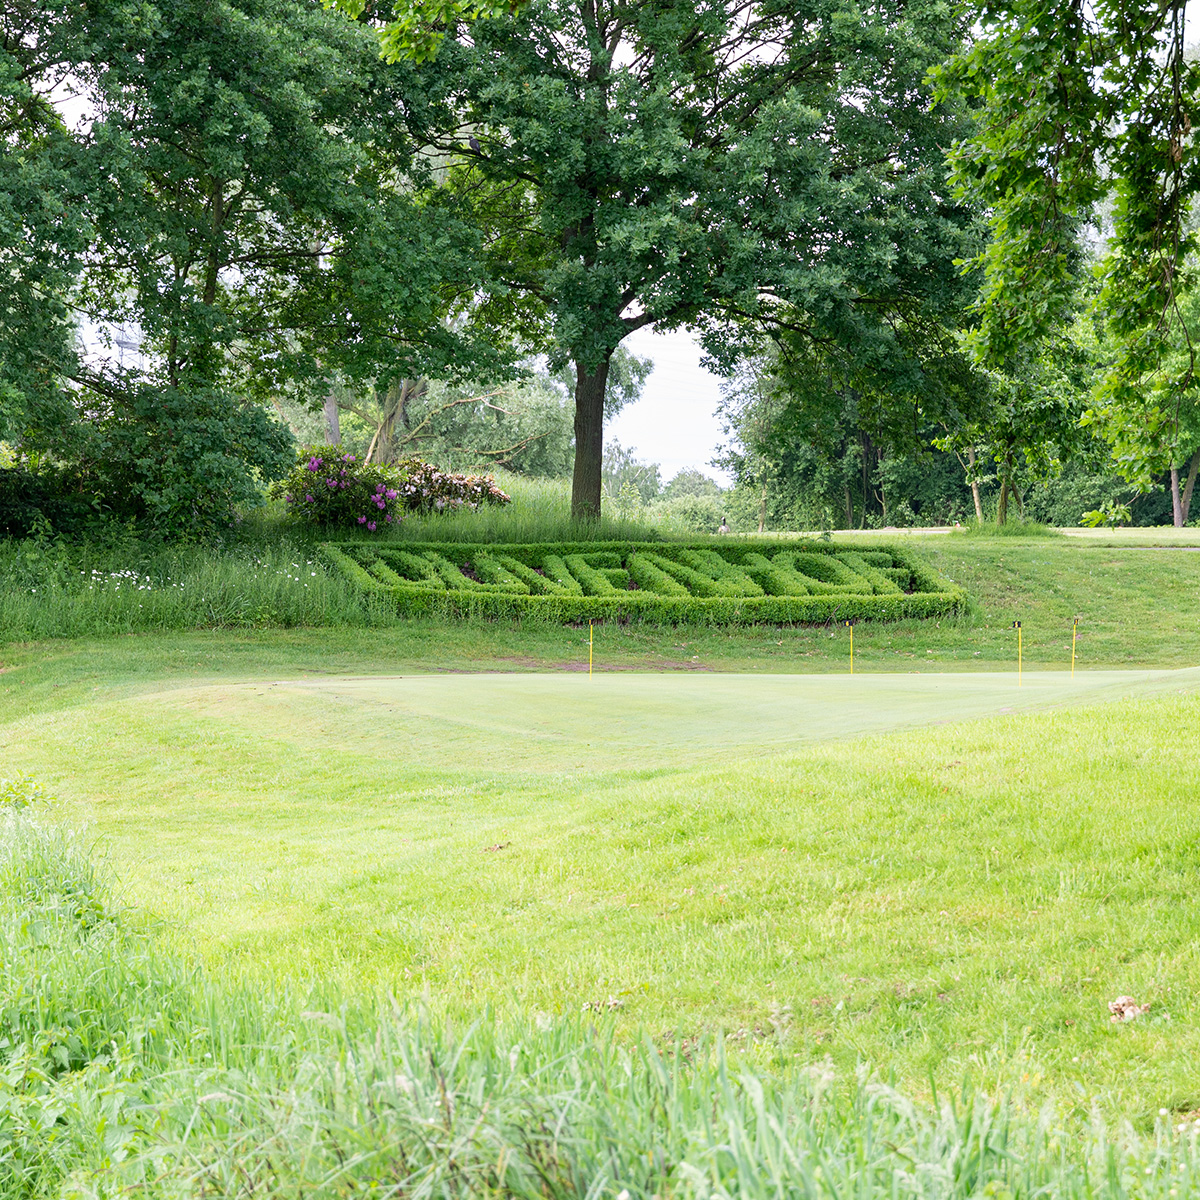 Ein Golfplatz mit grüner Umgebung und gepflegtem Rasen. Im Hintergrund sind Bäume und ein kunstvoller Buchsbaumschnitt zu sehen.